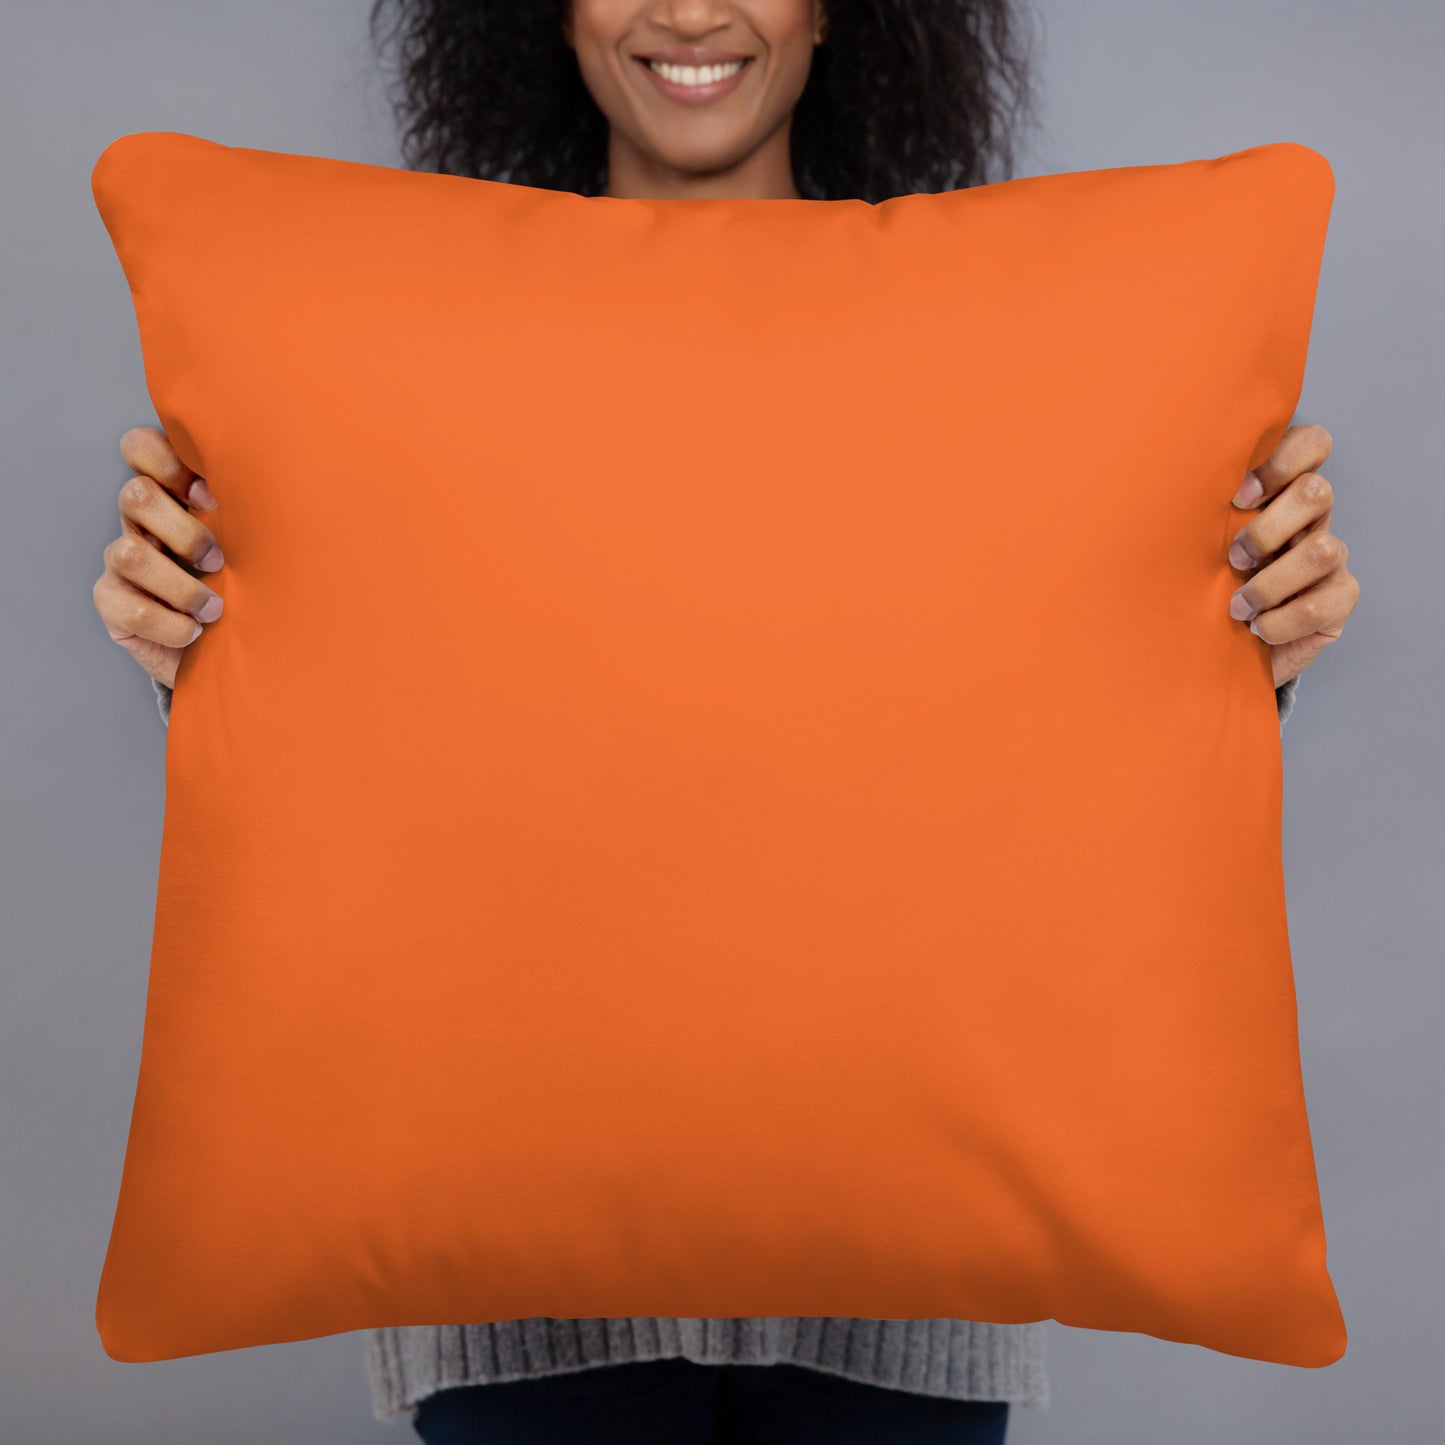 Bullseye Pillows